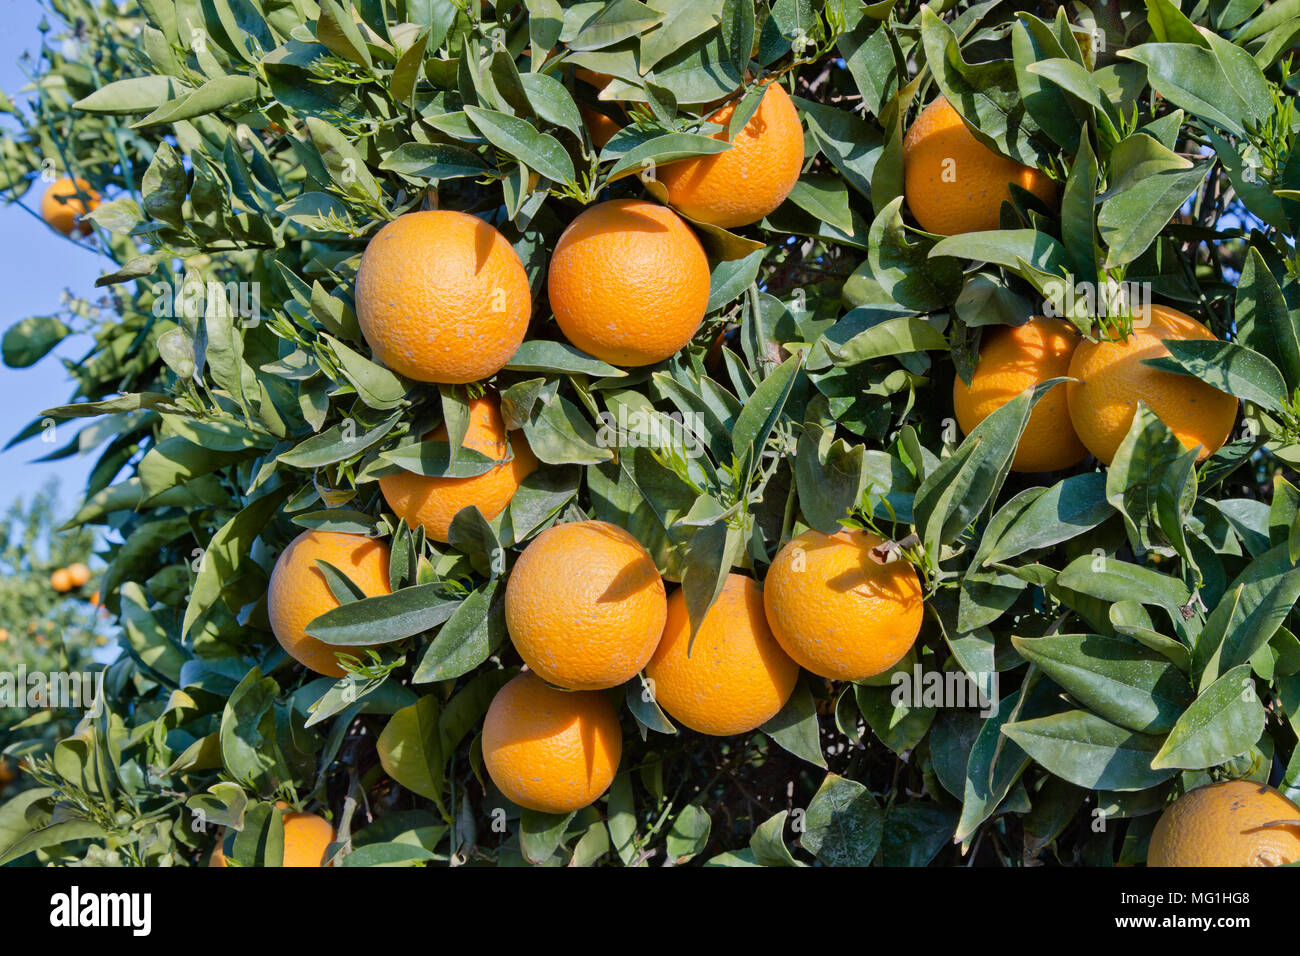 Coupe les oranges Valencia nucellaire de maturation sur les branches, 'Citrus sinensis'. Banque D'Images